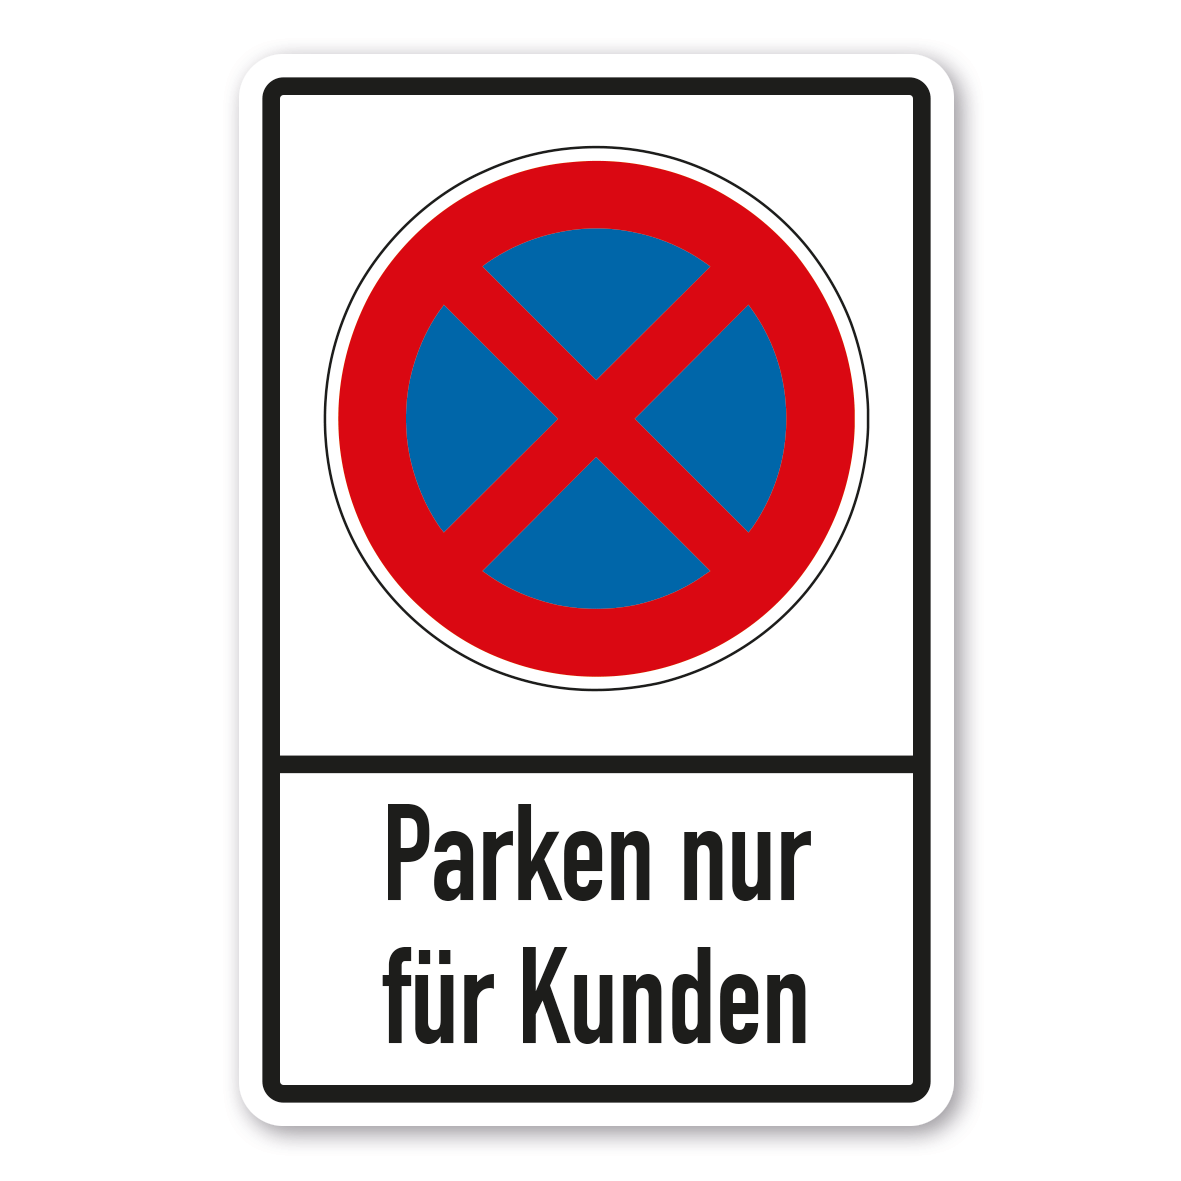 Privat-Parkplatz Parken verboten Parken nur fuer Besucher  290 x 180 x 4 mm 